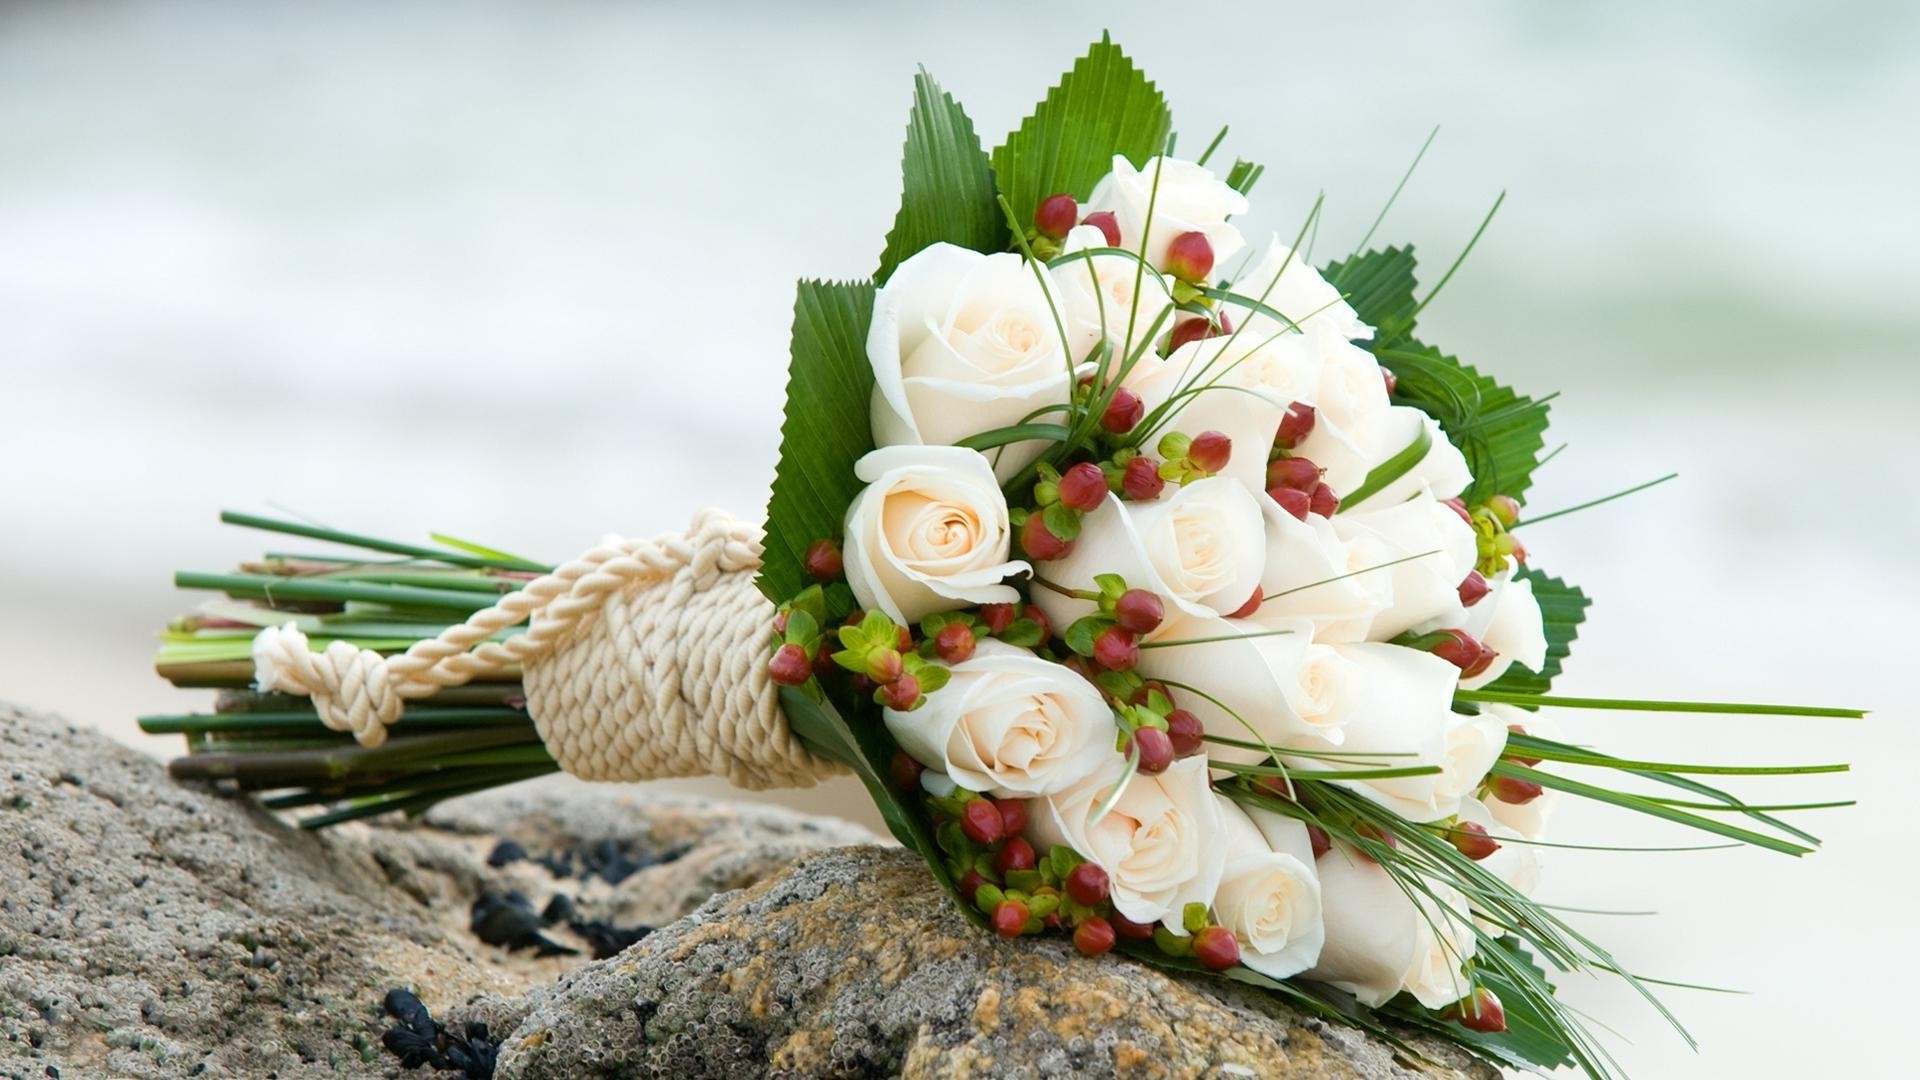 a bouquet of flowers bouquet nature flower celebration decoration close-up leaf wedding